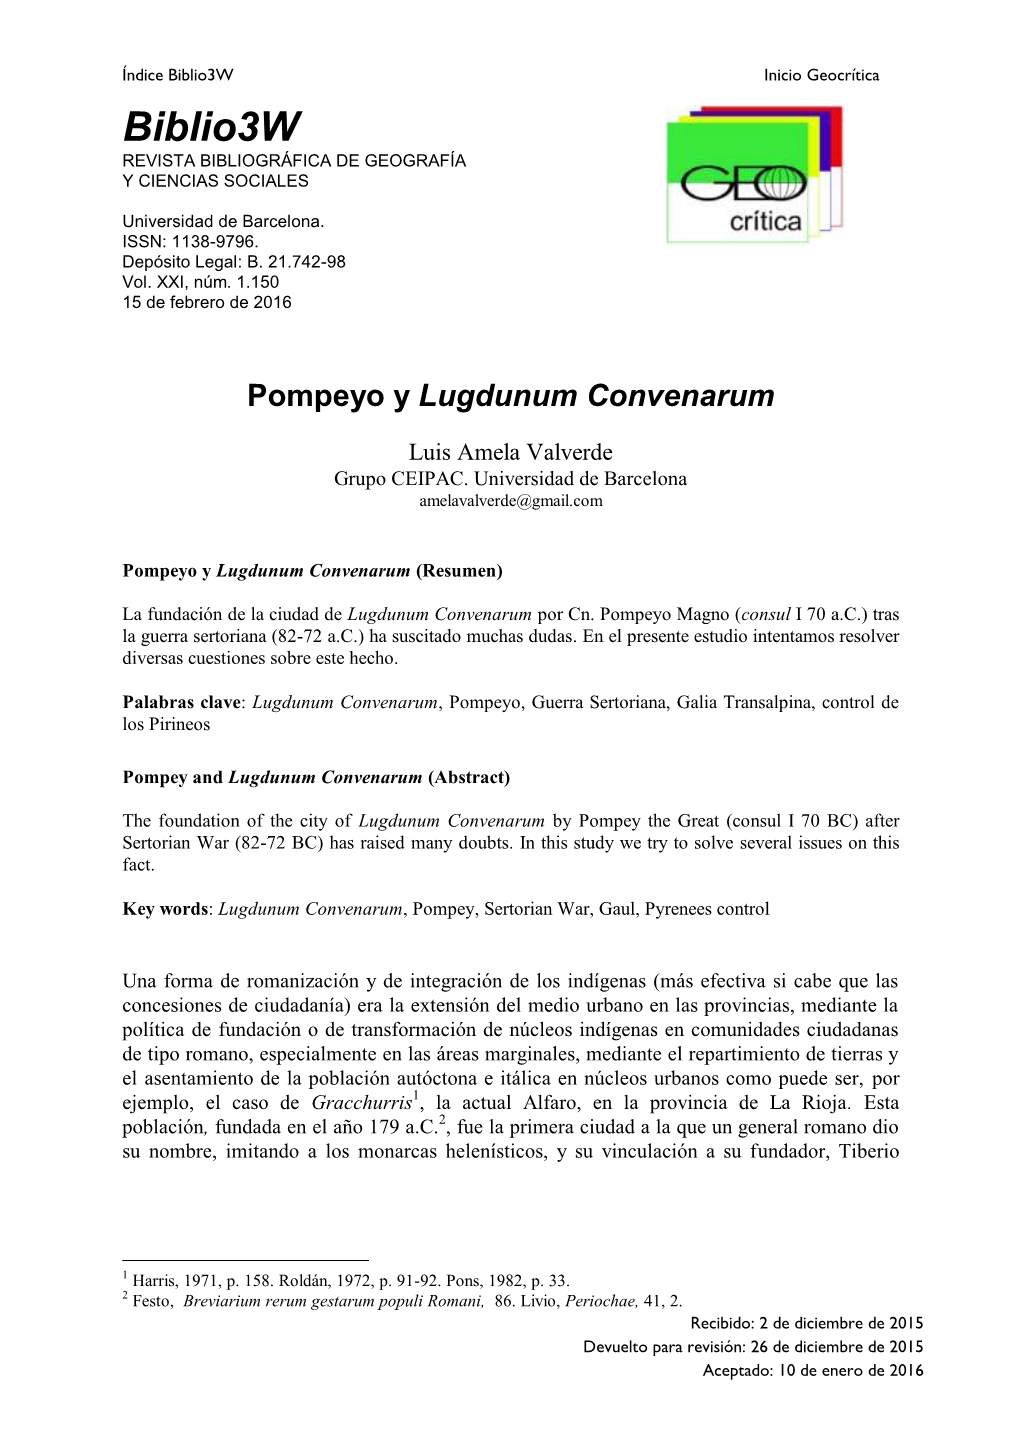 Pompeyo Y Lugdunum Convenarum